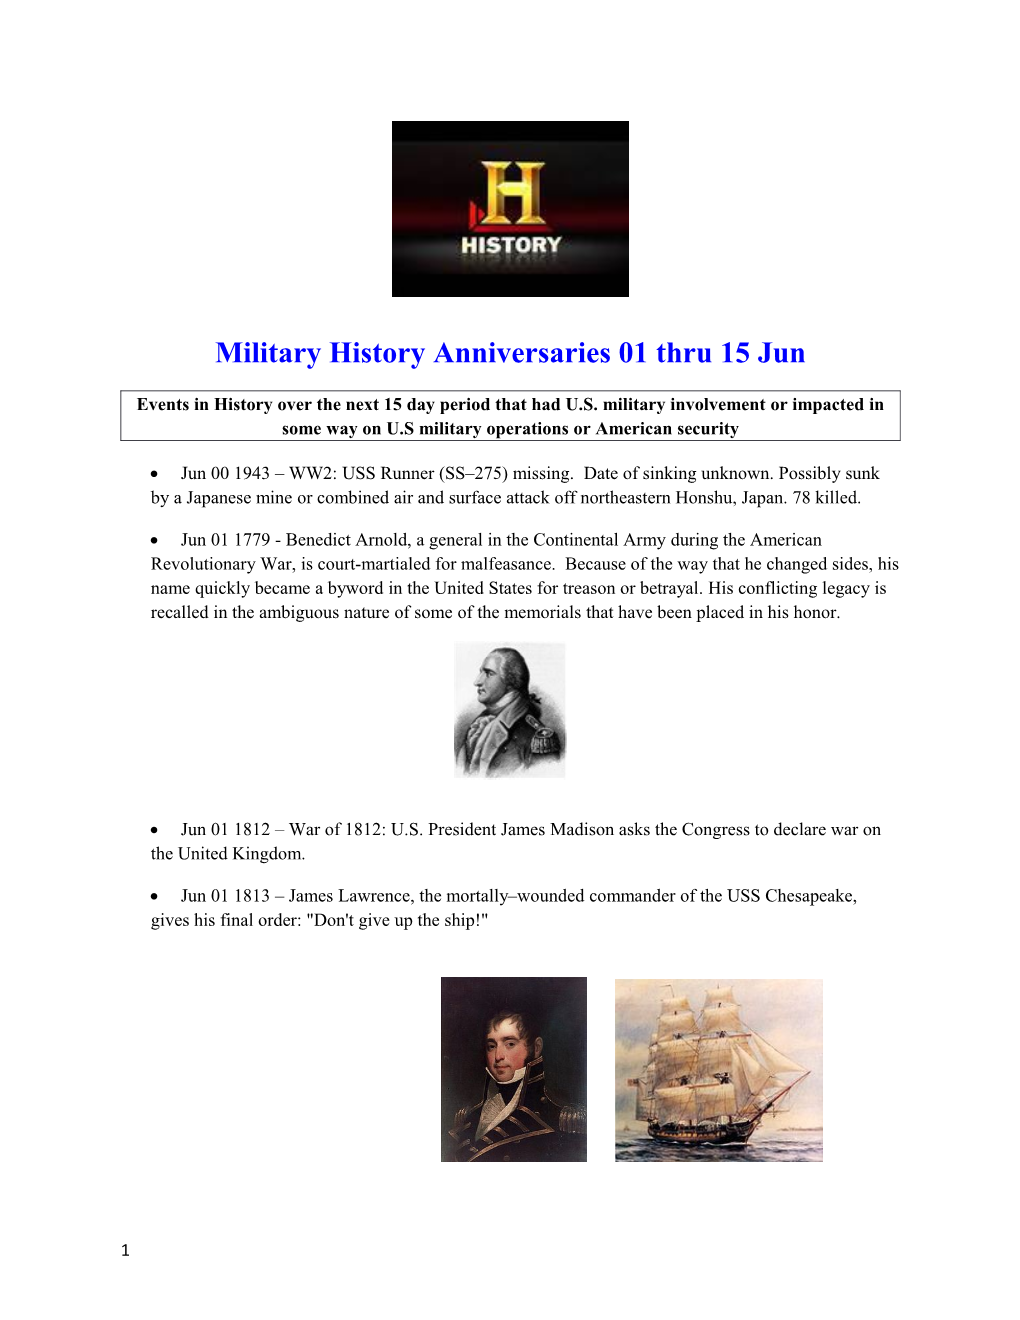 Military History Anniversaries 01 Thru 15 Jun